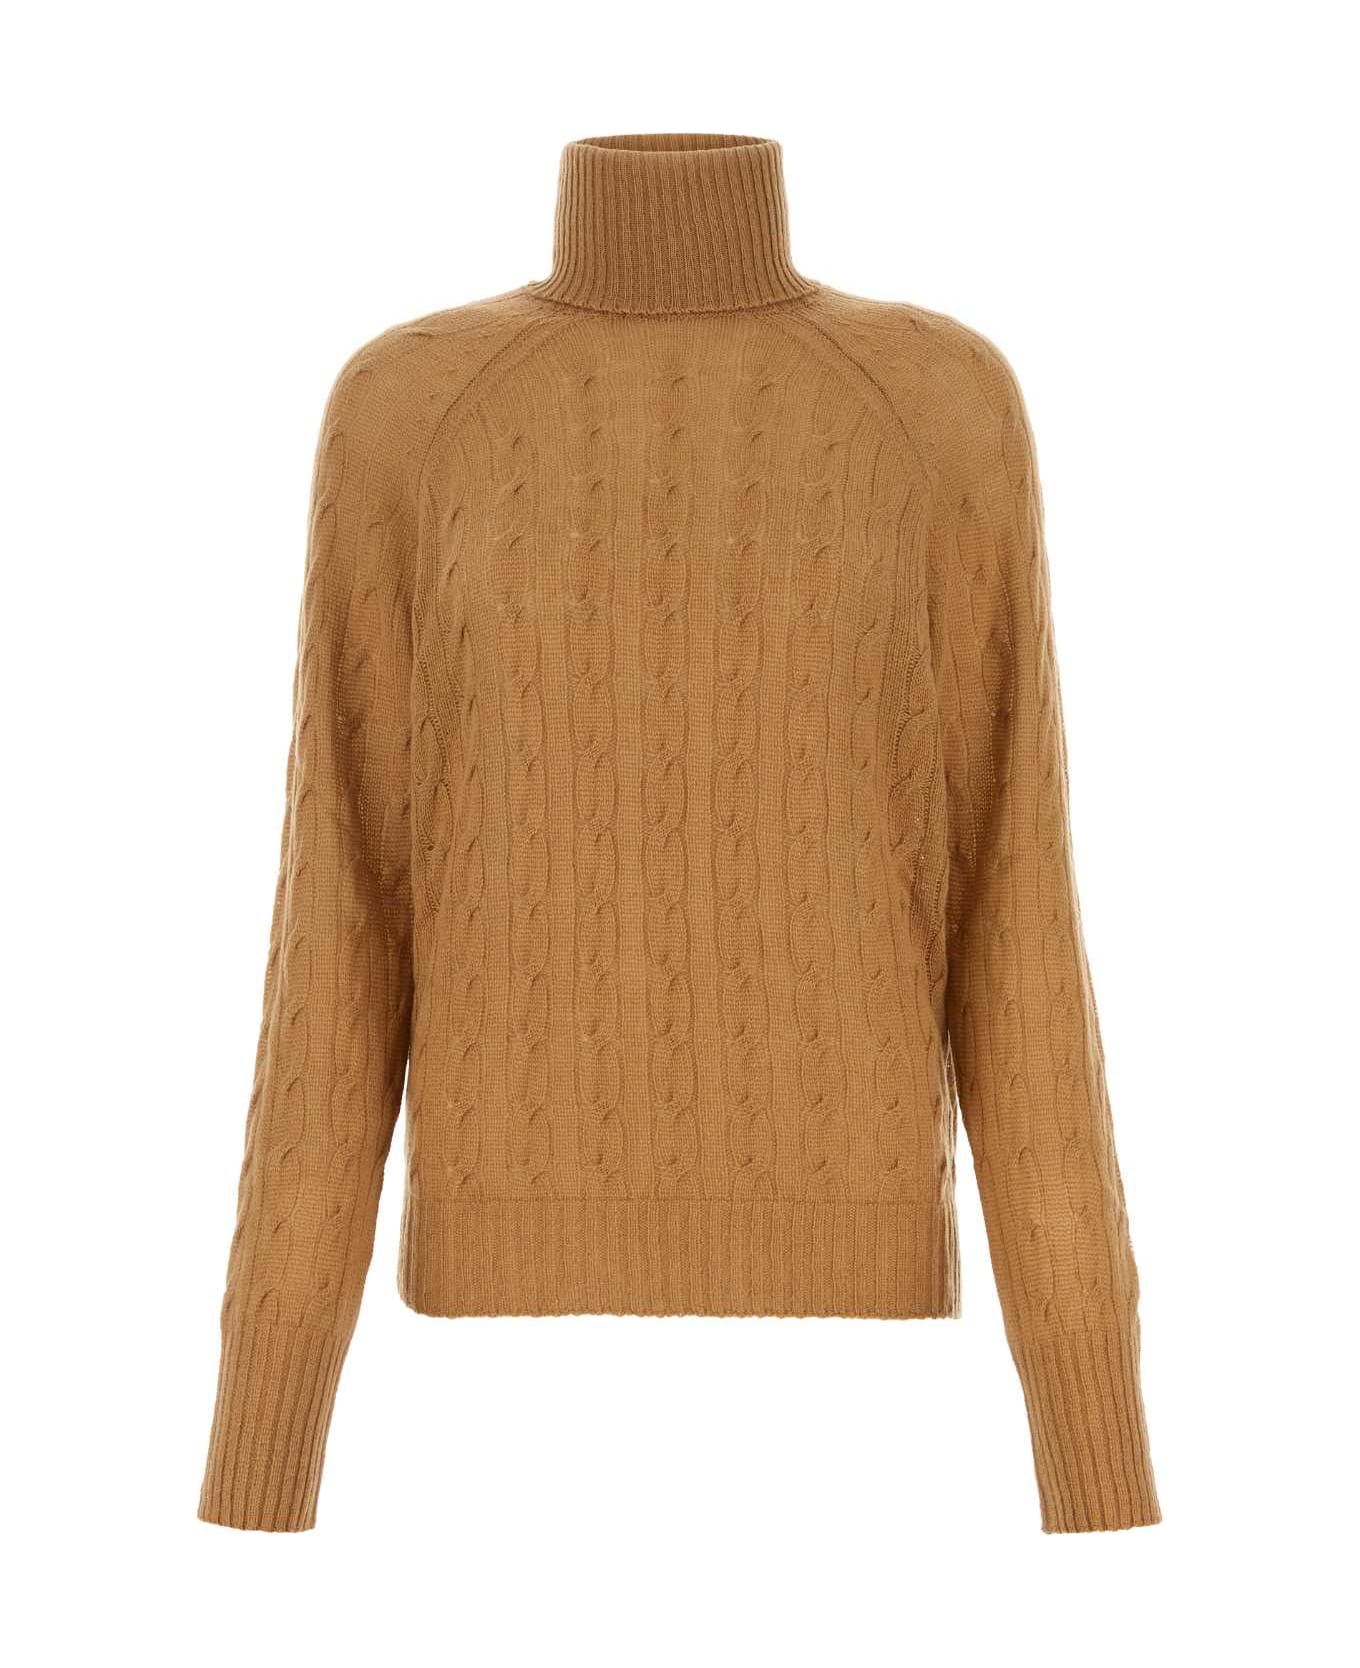 Etro Biscuit Cashmere Sweater - BEIGE ニットウェア